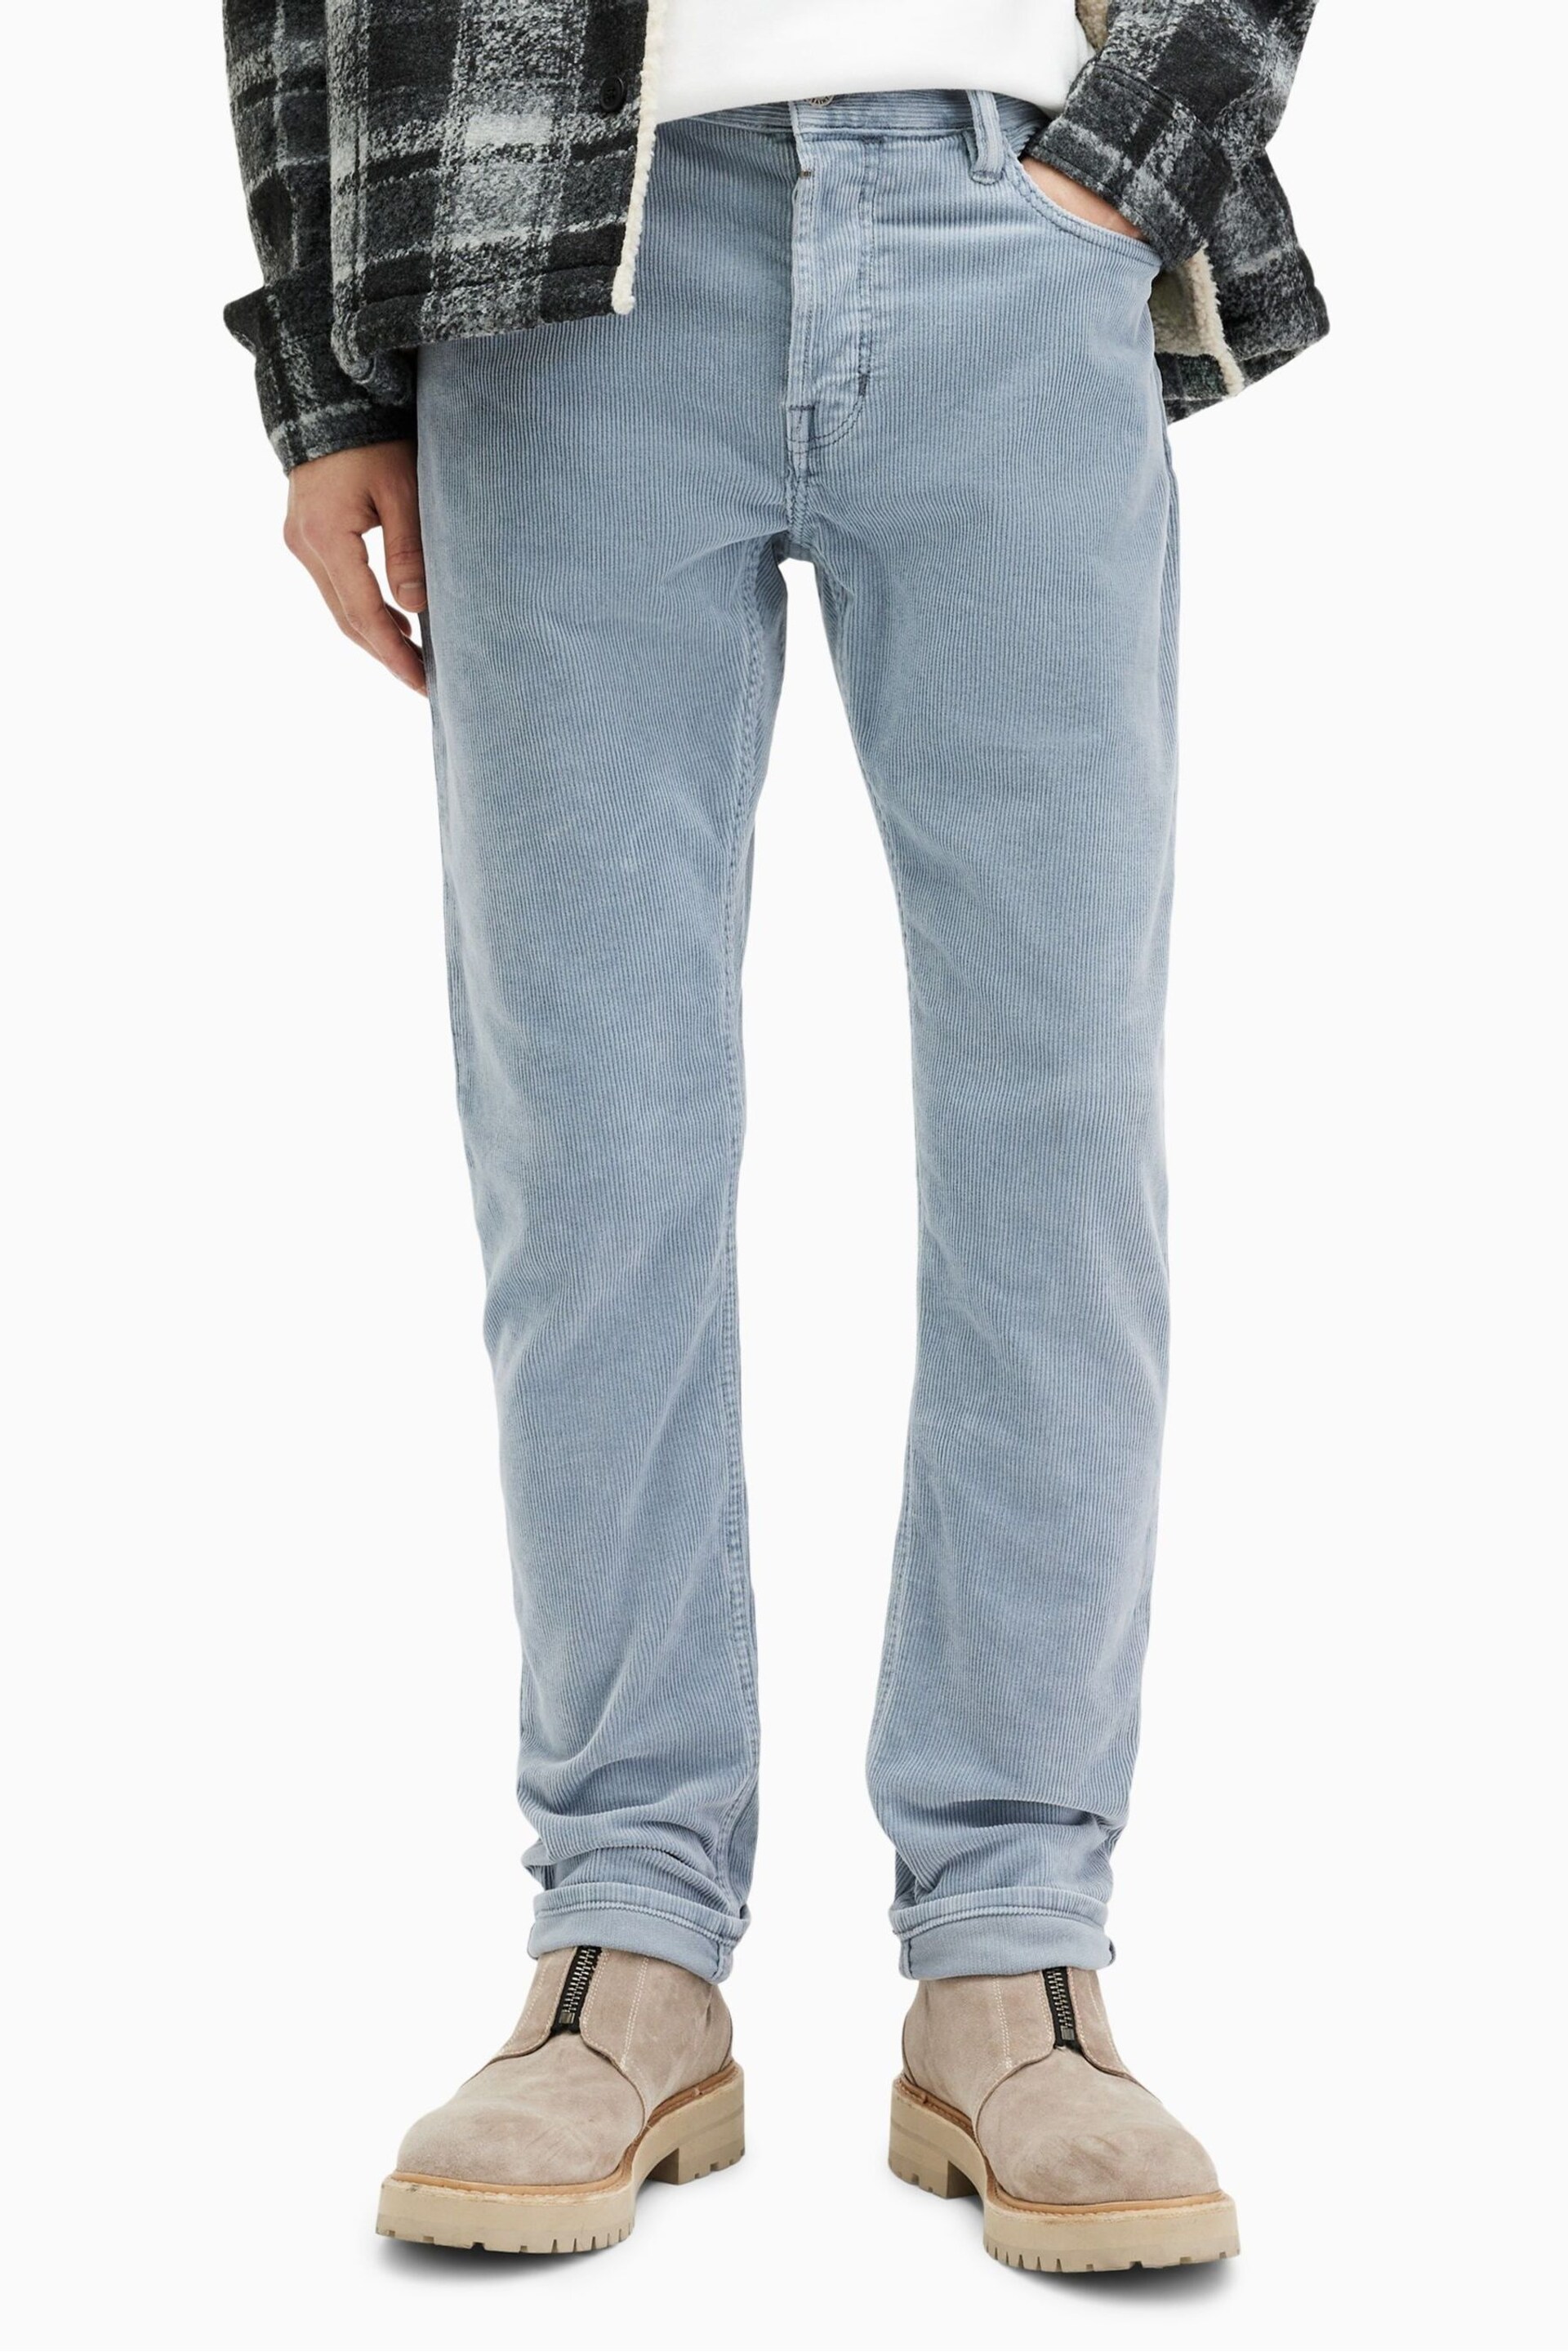 AllSaints Blue Rex Corduroy Jeans - Image 1 of 6